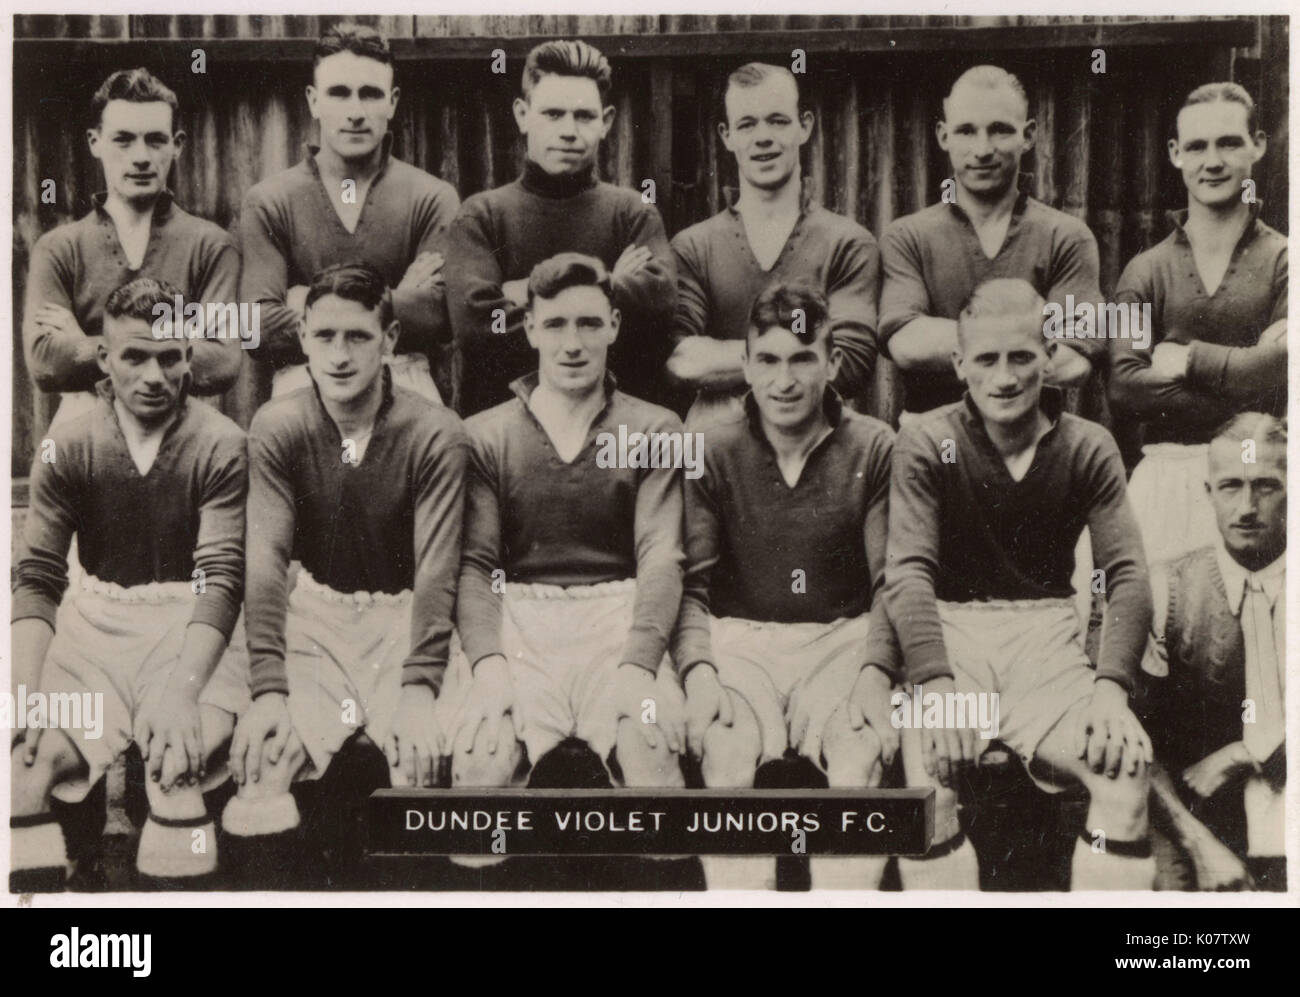 Dundee Violett Junioren FC Fußball-Team 1934-1935. Hintere Reihe: M'Ewan, M'Kenzie, Cargill, Irland, Calder (Kapitän), mudie. Vordere Reihe: Braun, M'Gurk, M'Naughton, Finnegan, Wilson. Datum: 1934-1935 Stockfoto